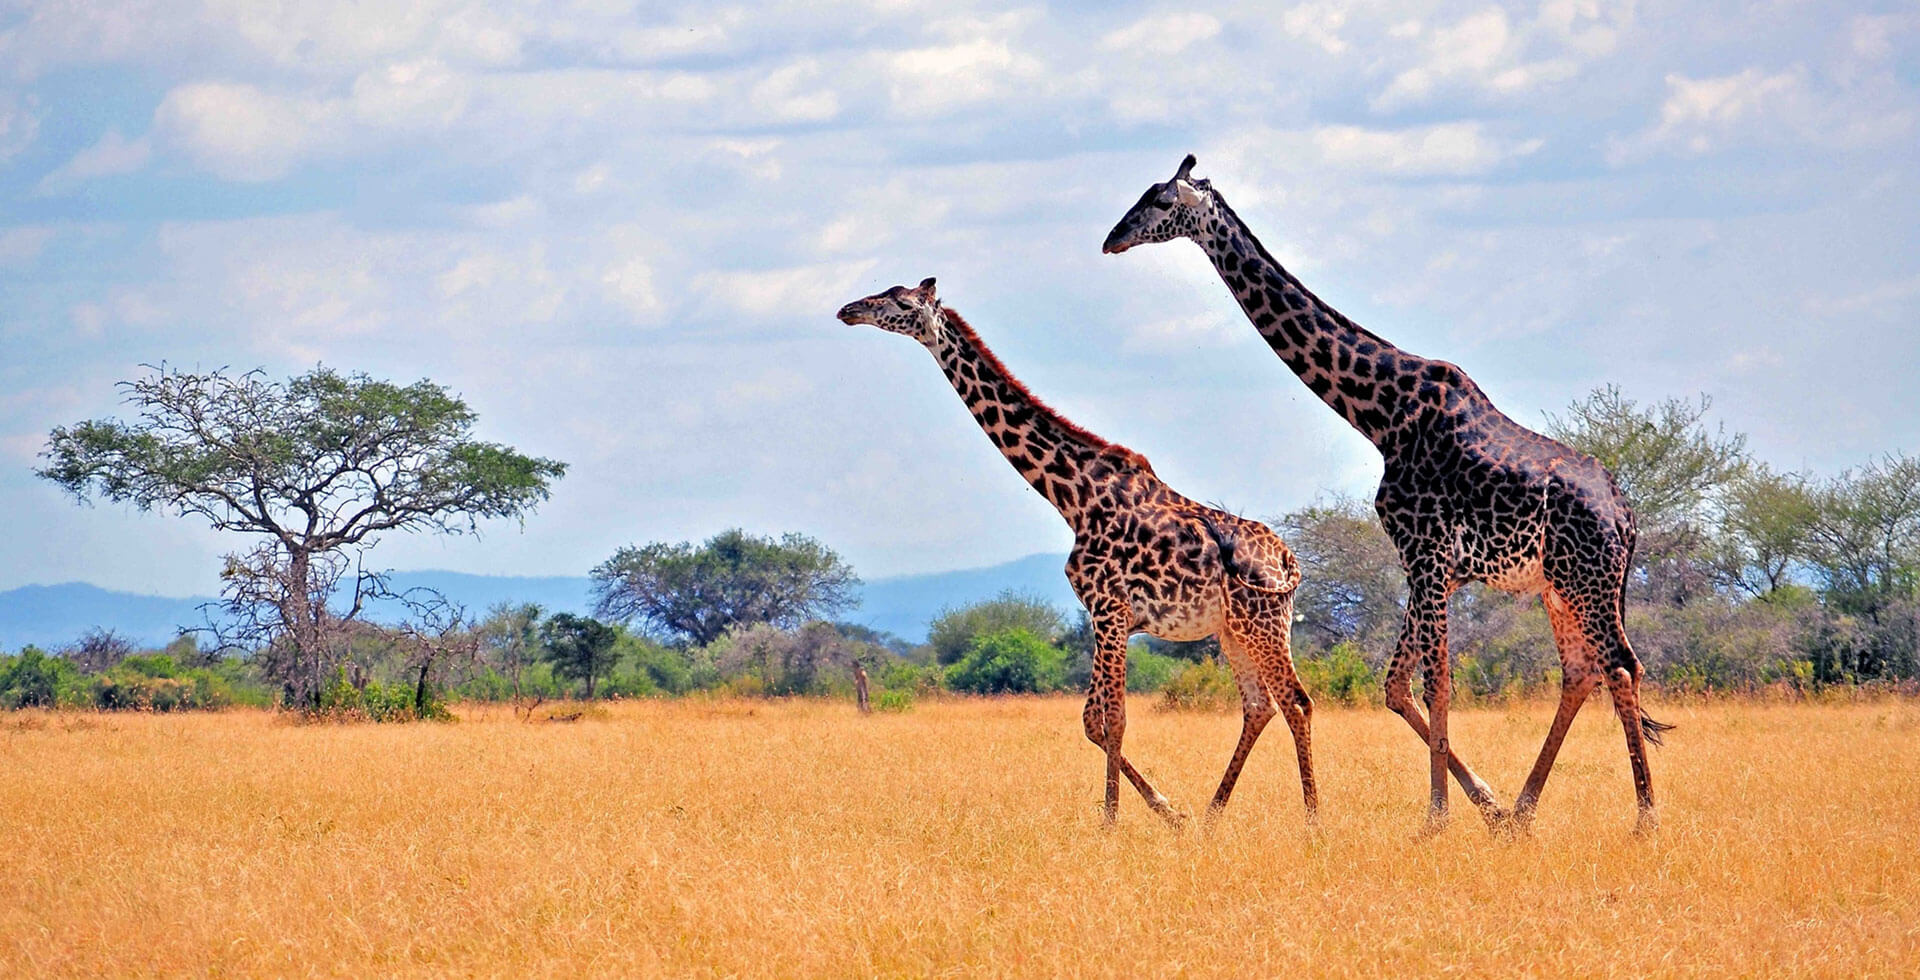 tanzania safari tours, tanzania tours, tanzania safari